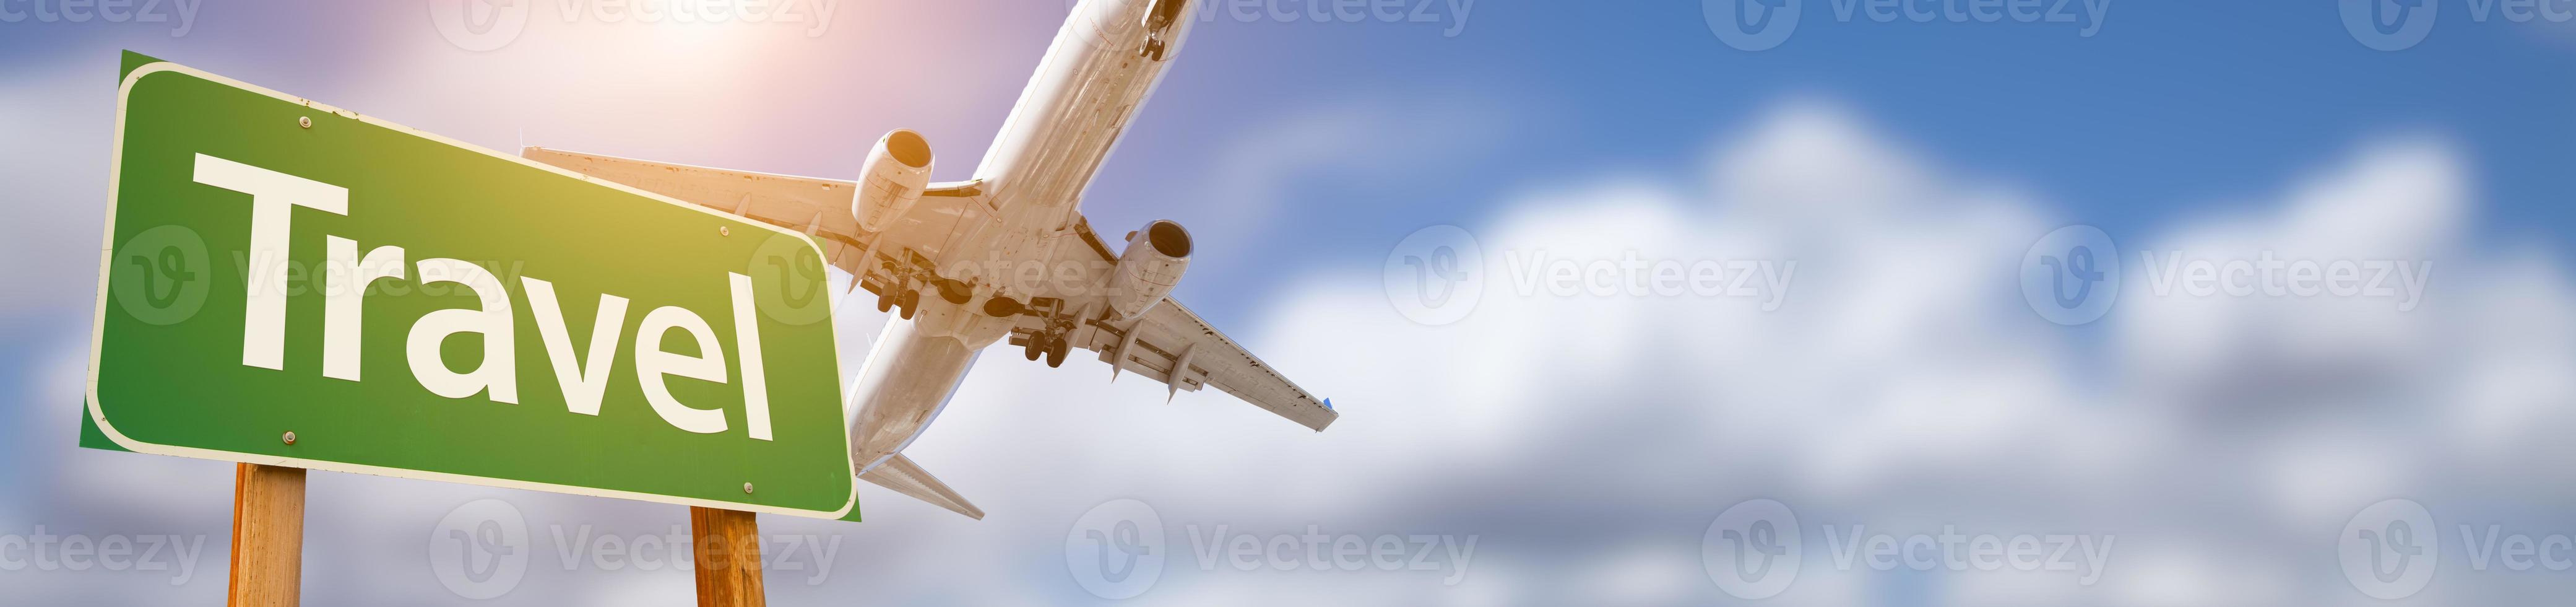 banner de sinal de rodd verde de viagem com avião voando acima foto